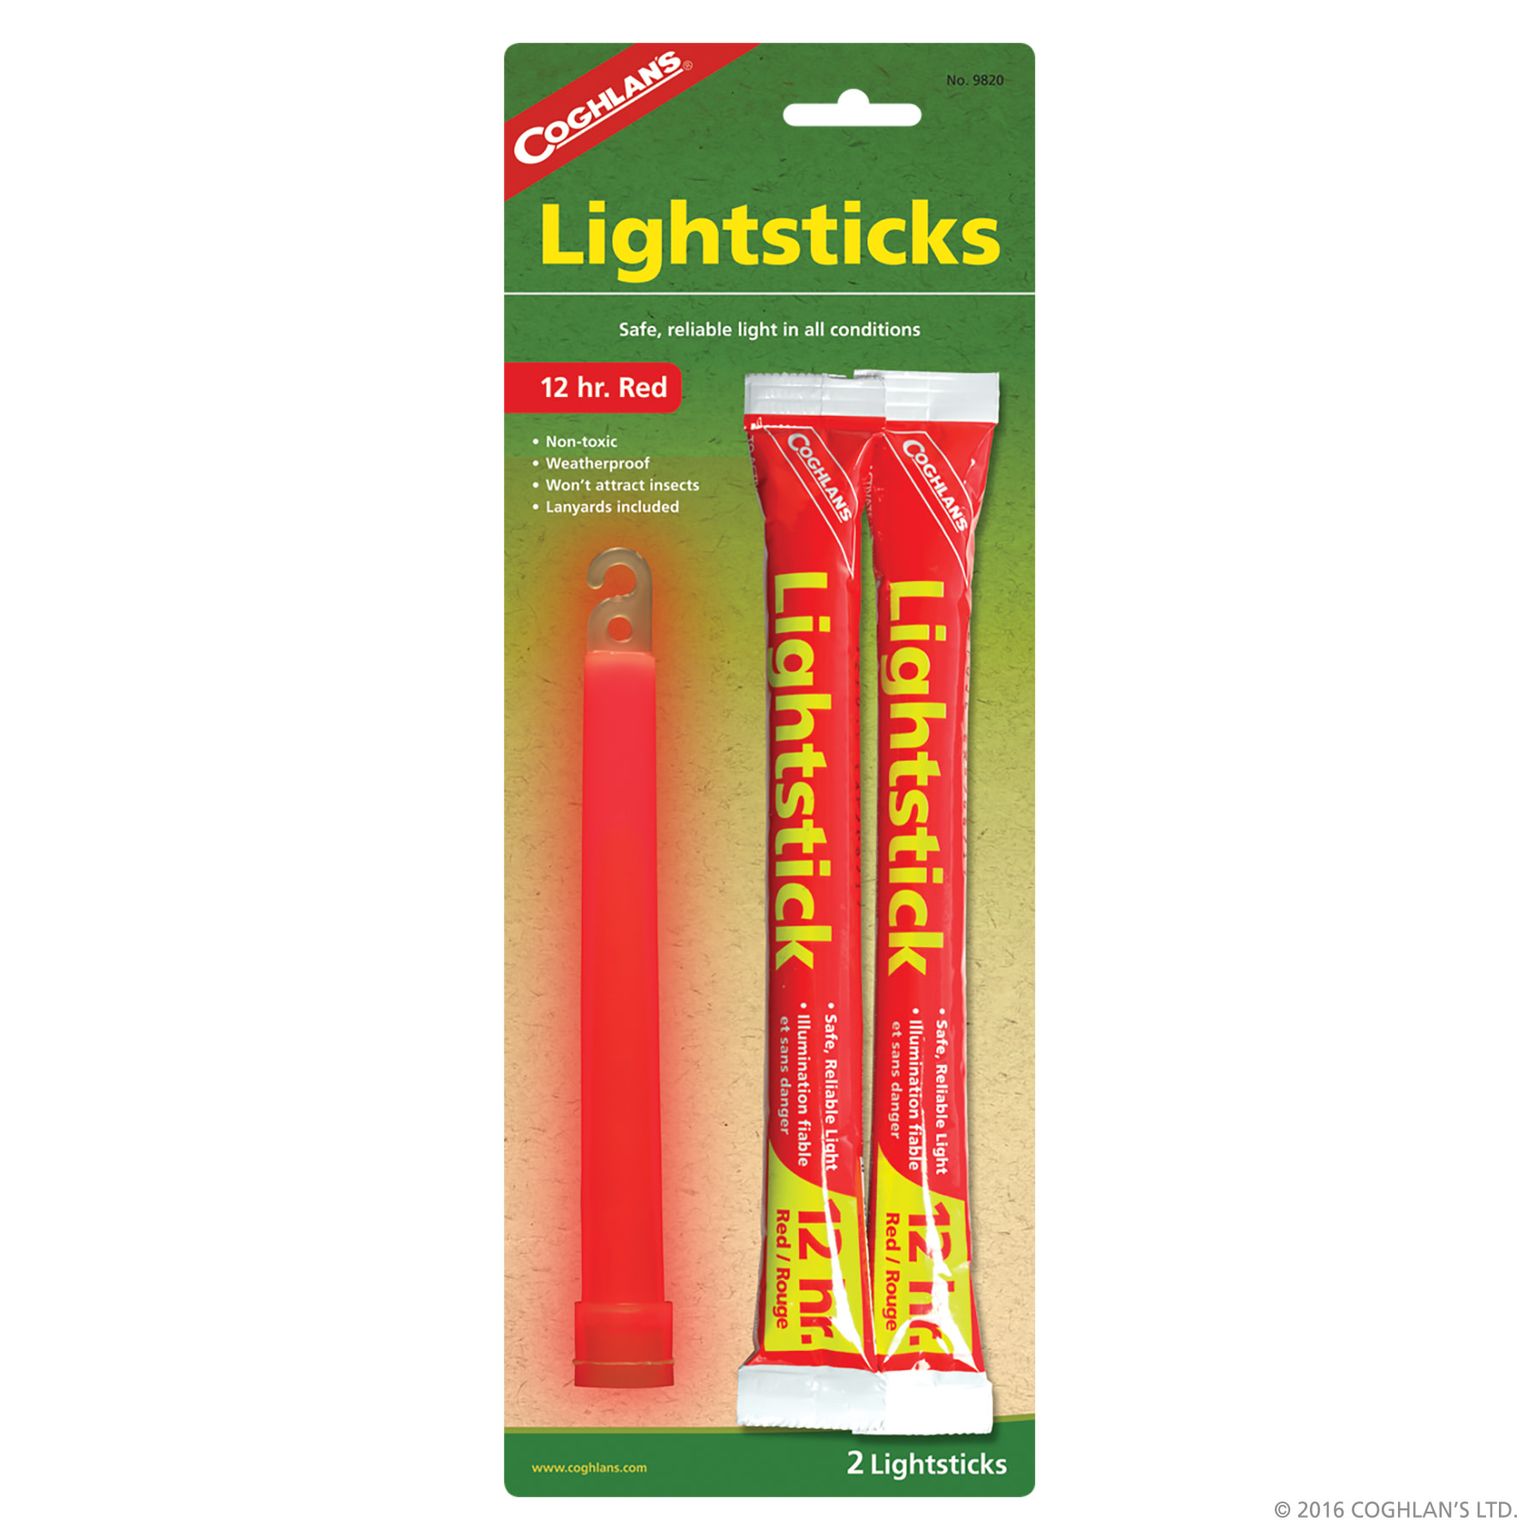 Coghlan's Lightsticks 2-pack Green